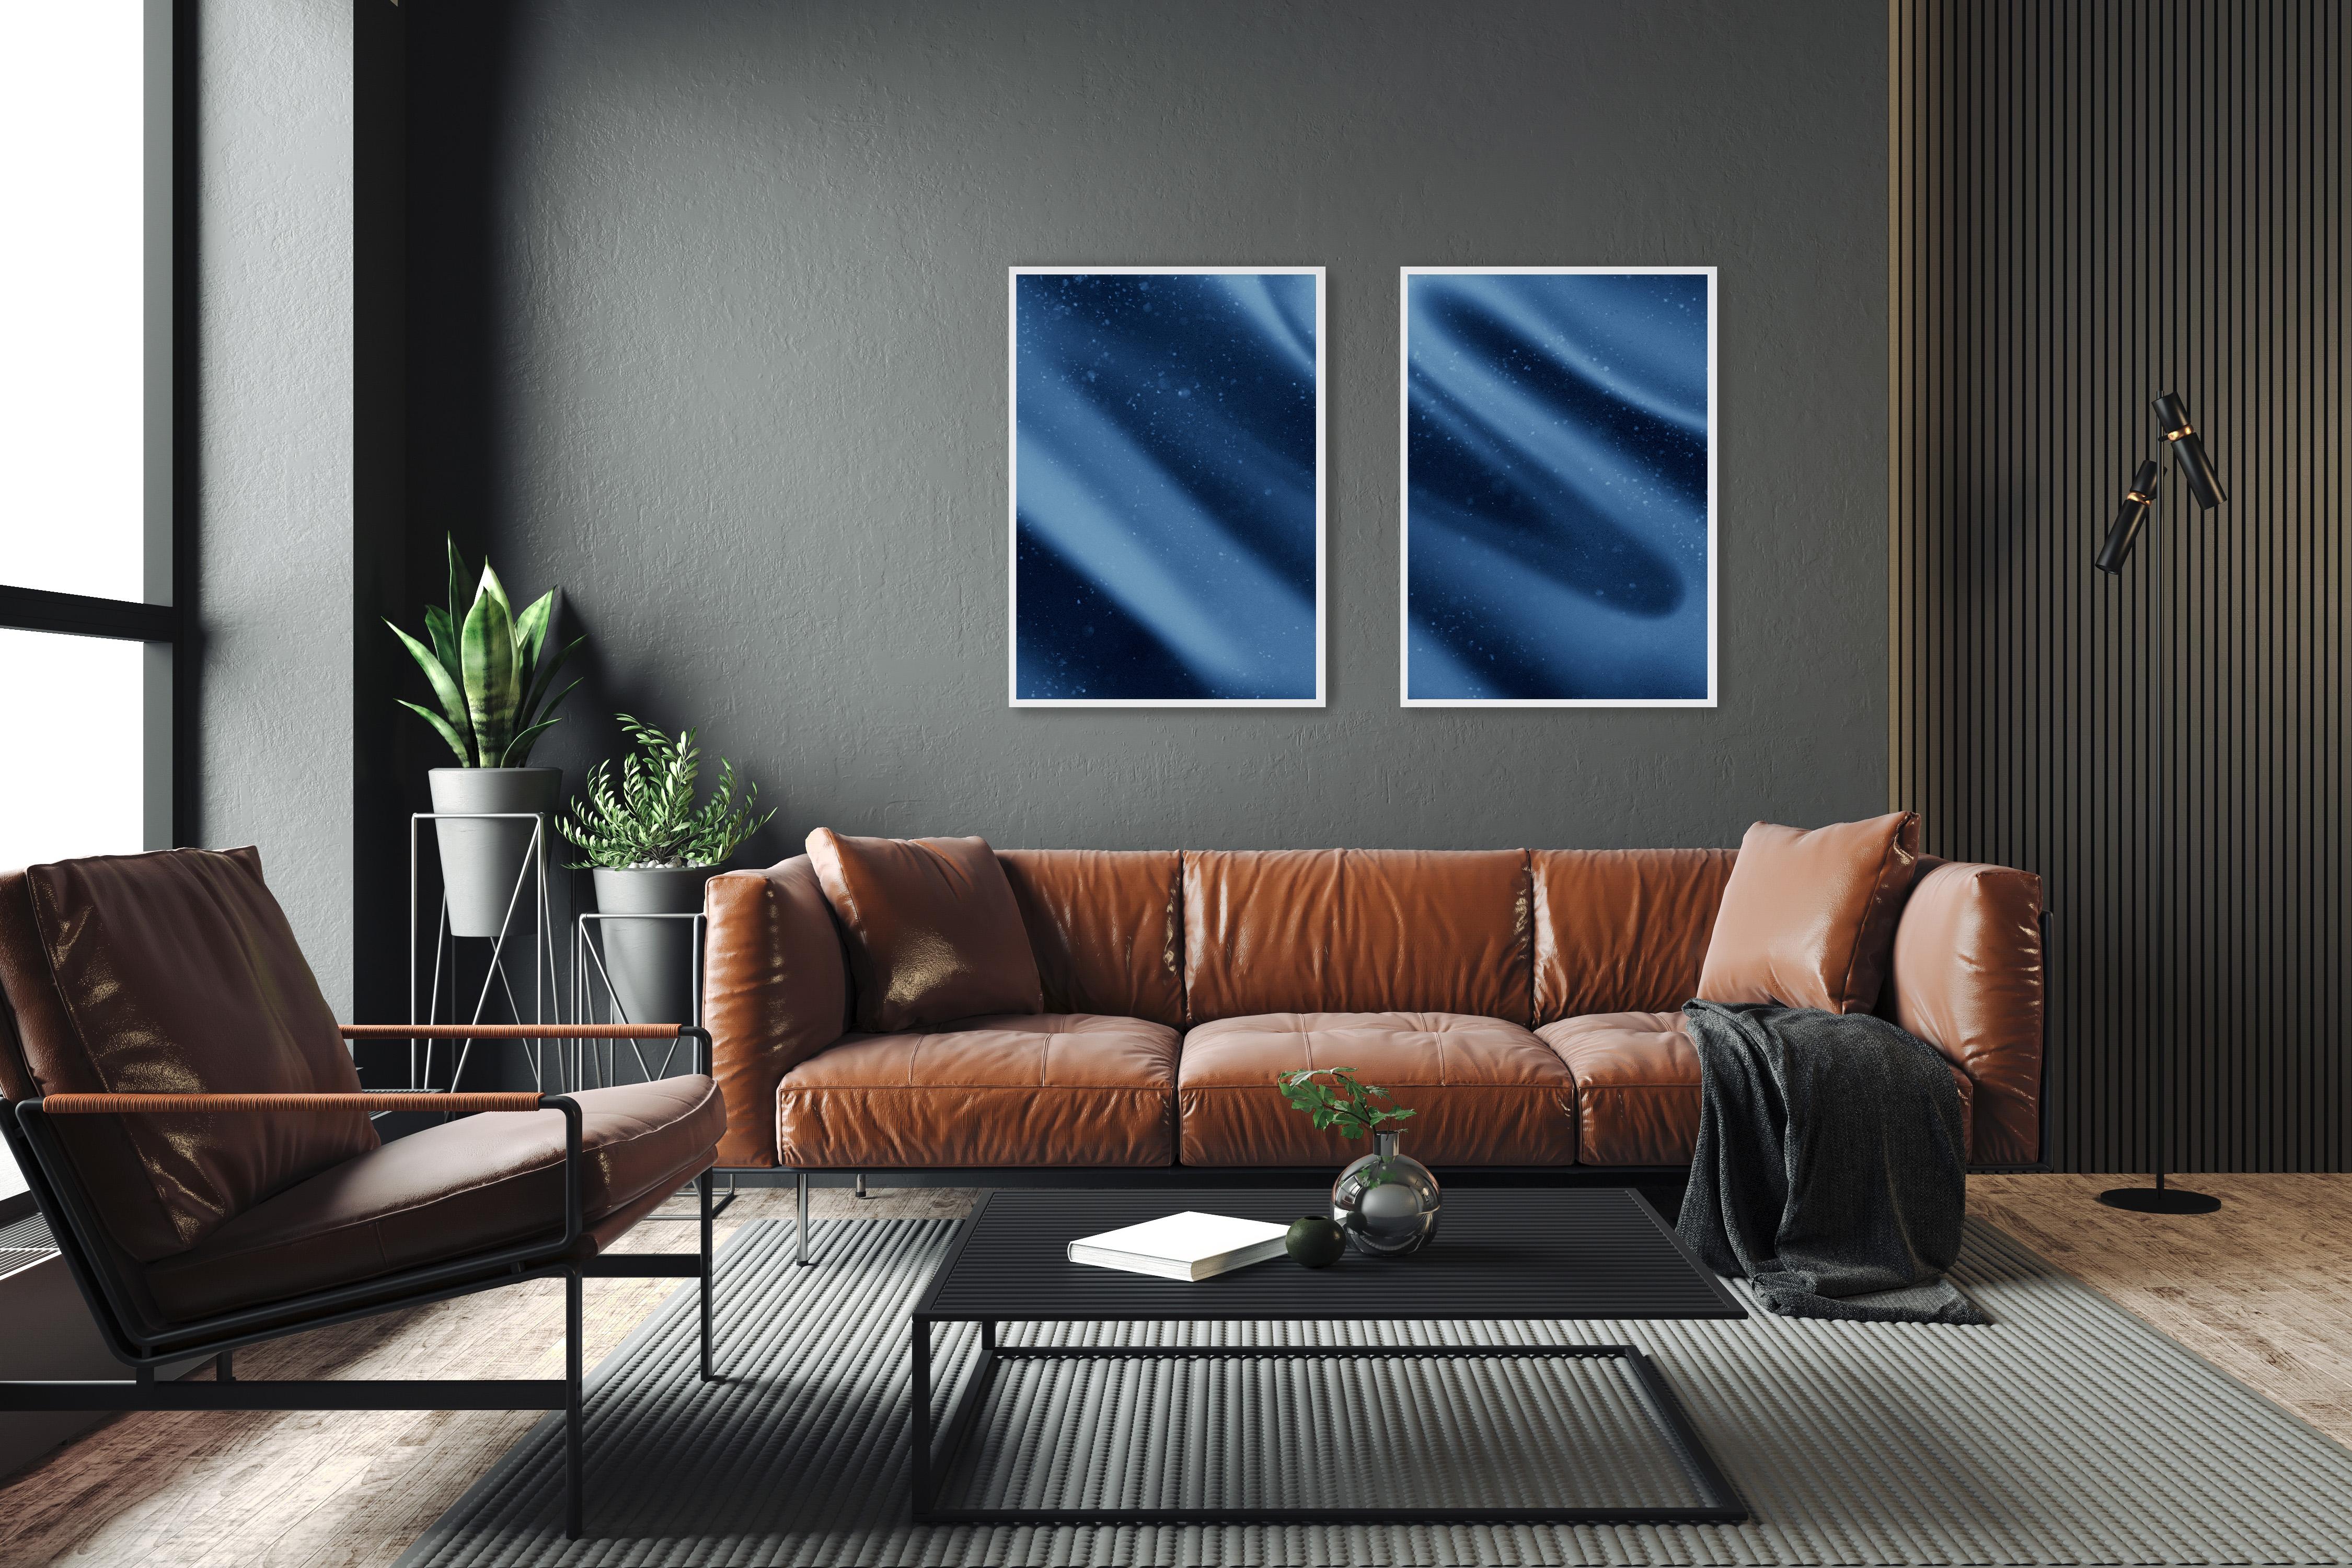 Space is The Place, Depp Blaues Diptychon in Blautönen, abstrakte Seidenformen, limitierte Giclee (Zeitgenössisch), Photograph, von Ryan Rivadeneyra